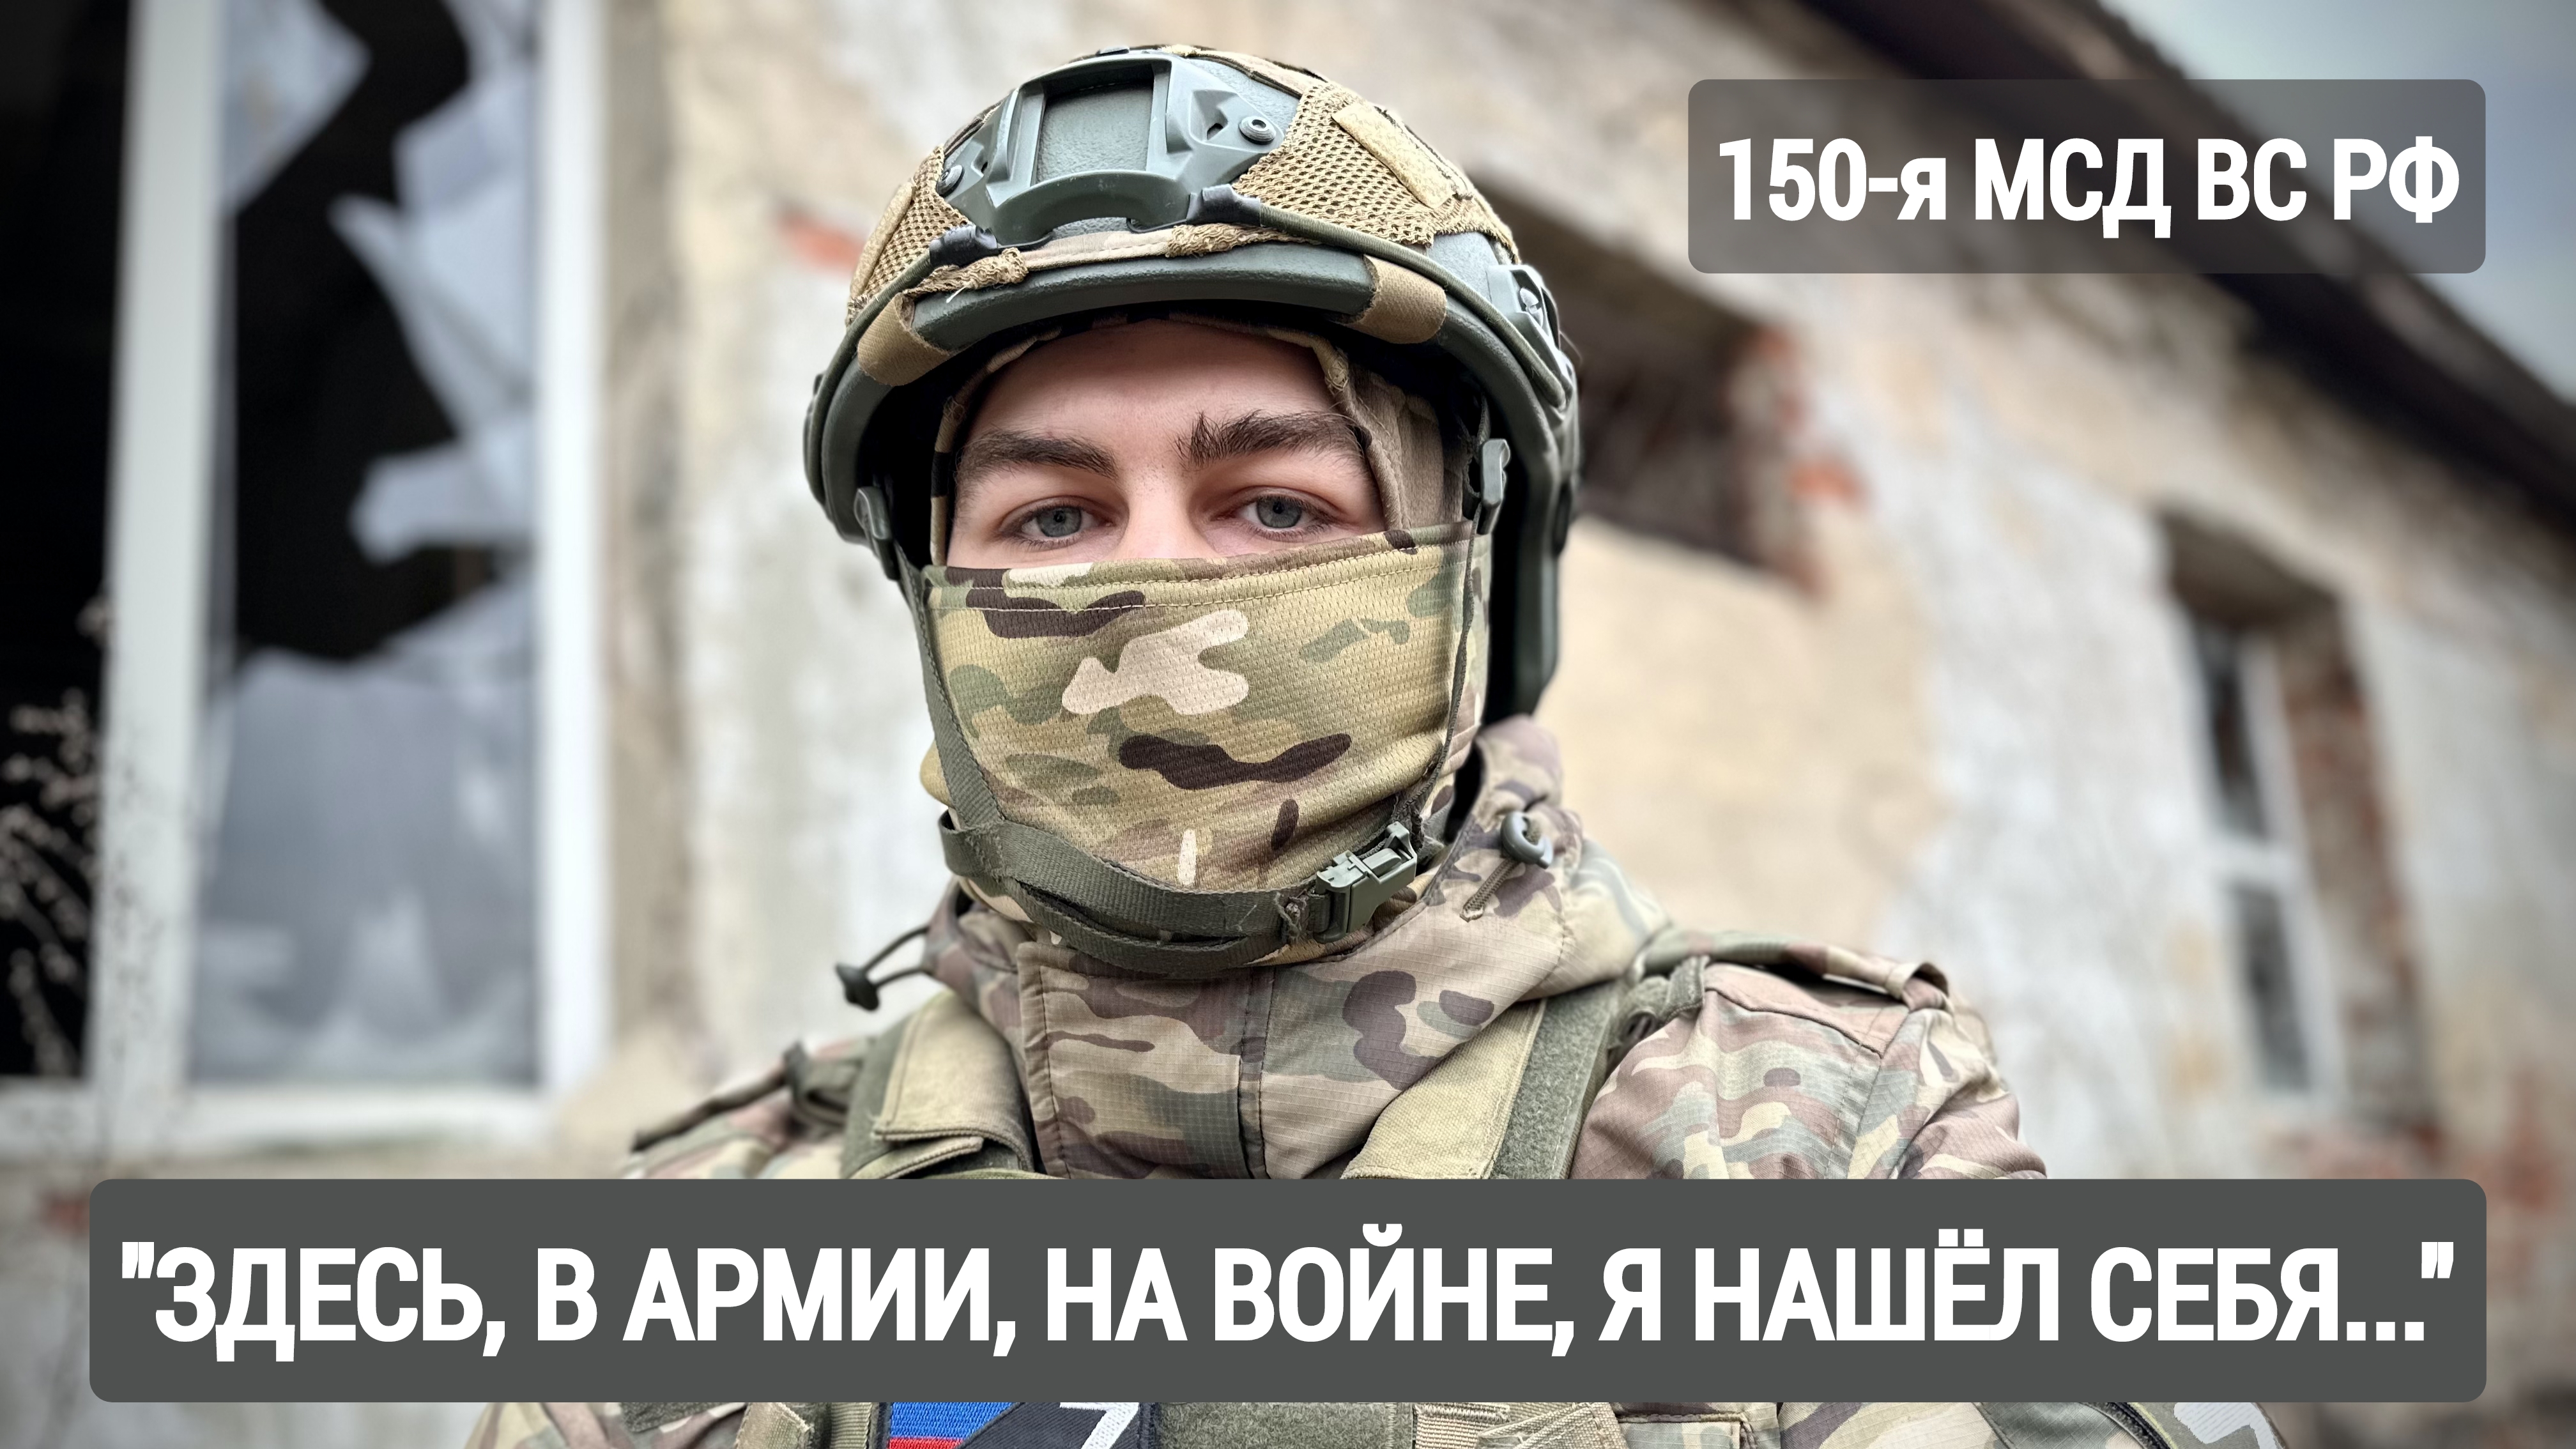 "Здесь, в армии, на войне, я нашёл себя..." письма с фронта : военкор Марьяна Наумова